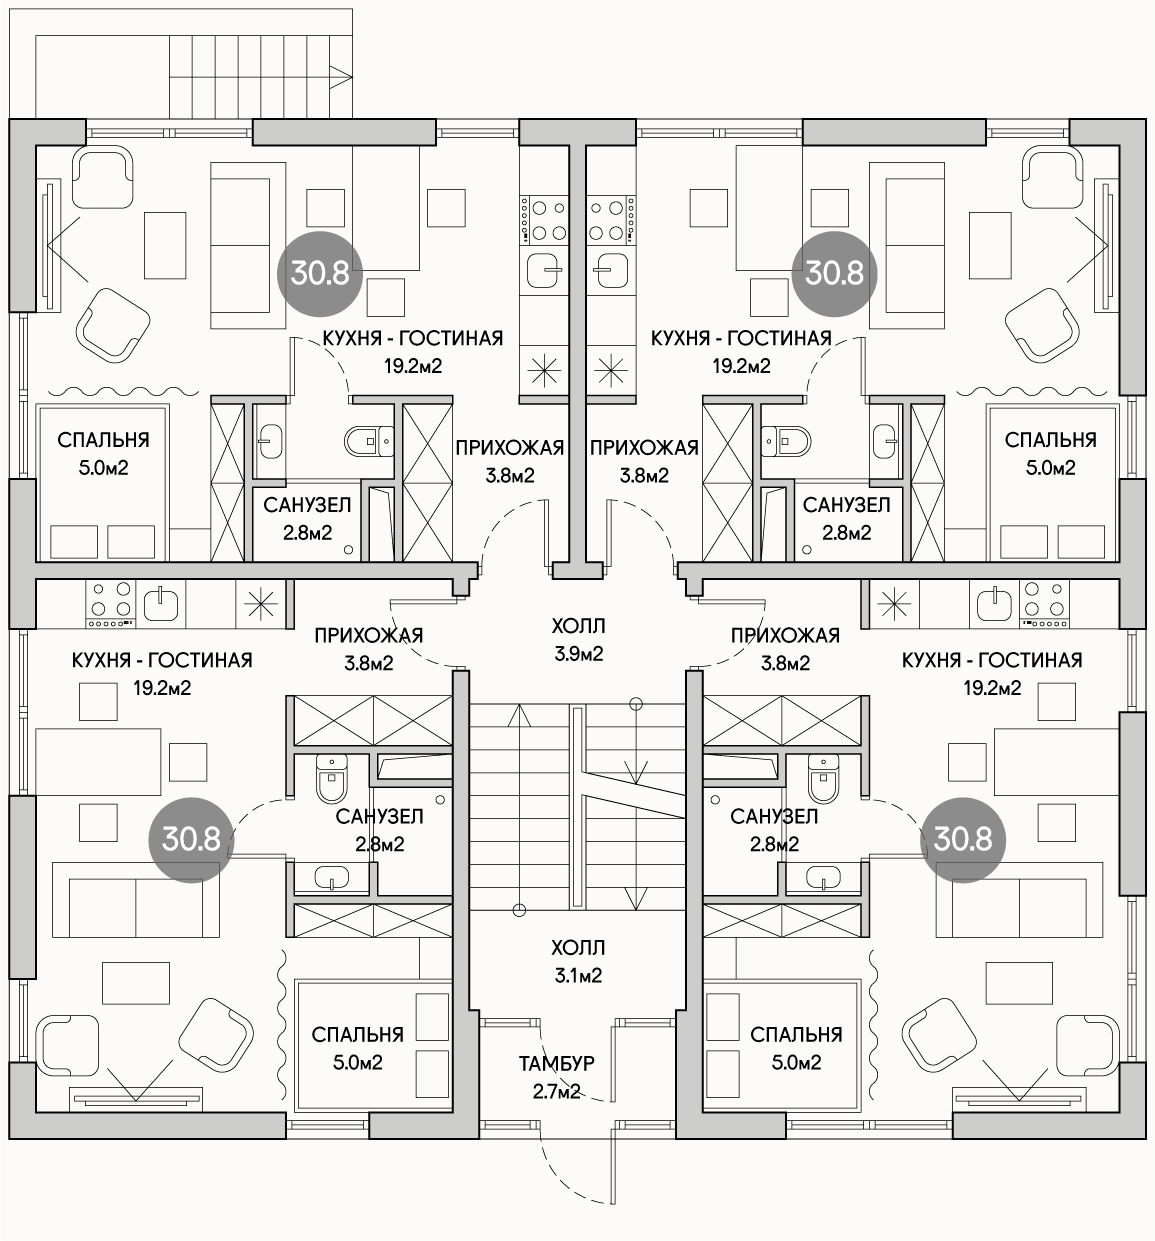 Планирока 1-го этажа в проекте Многоквартирный дом с эксплуатируемой кровлей MK-515